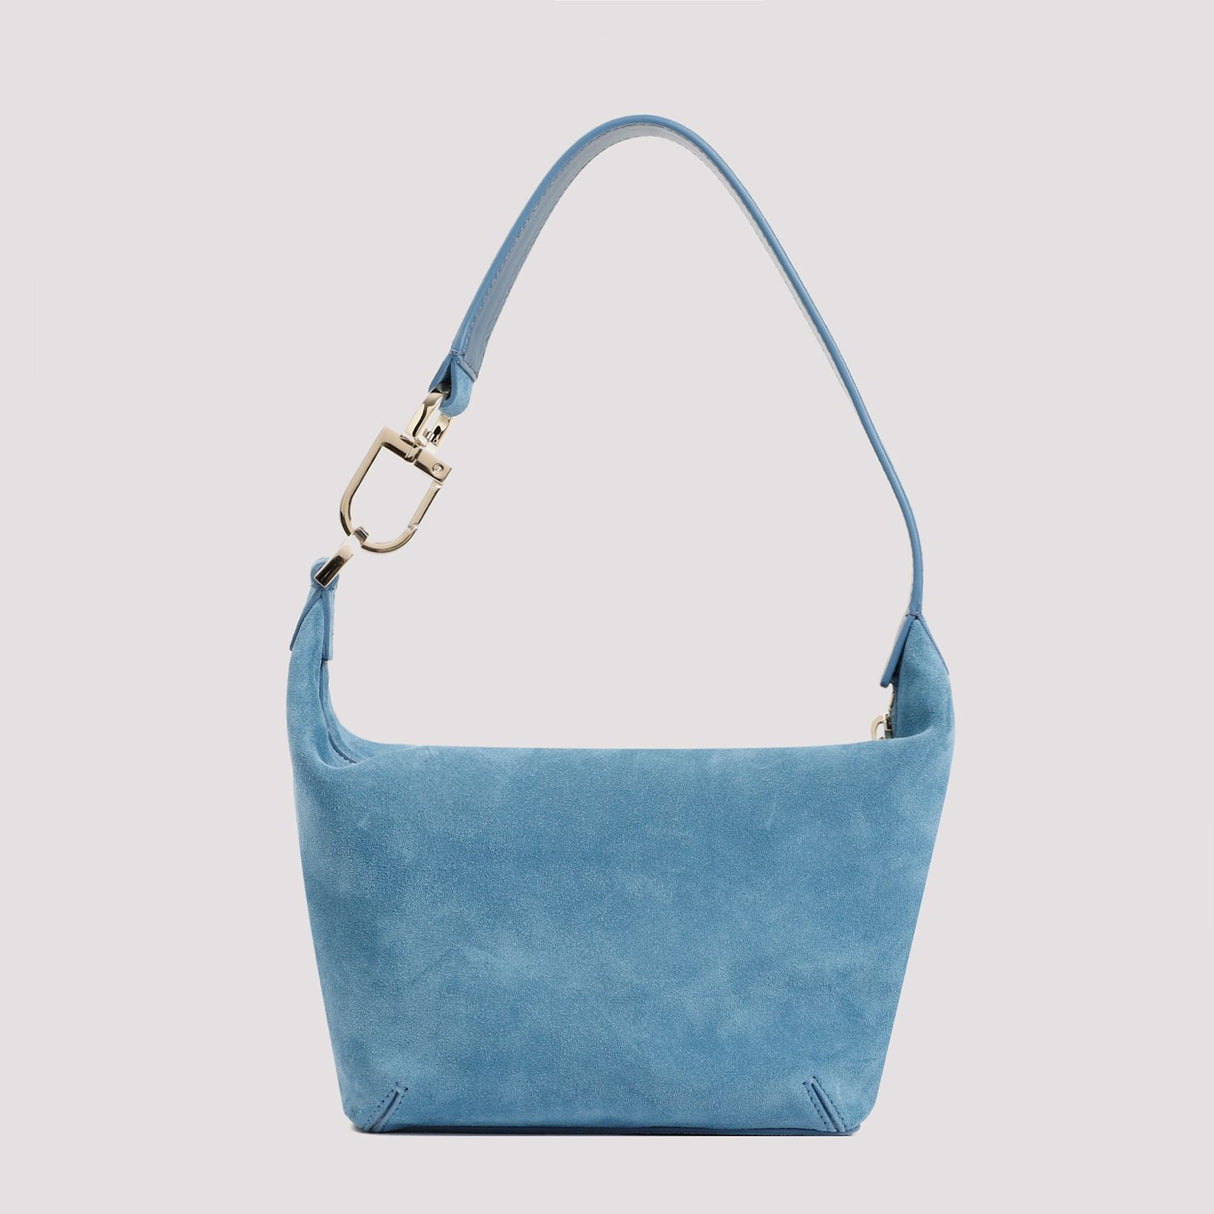 GIORGIO ARMANI Blue Suede Leather Handbag for Women